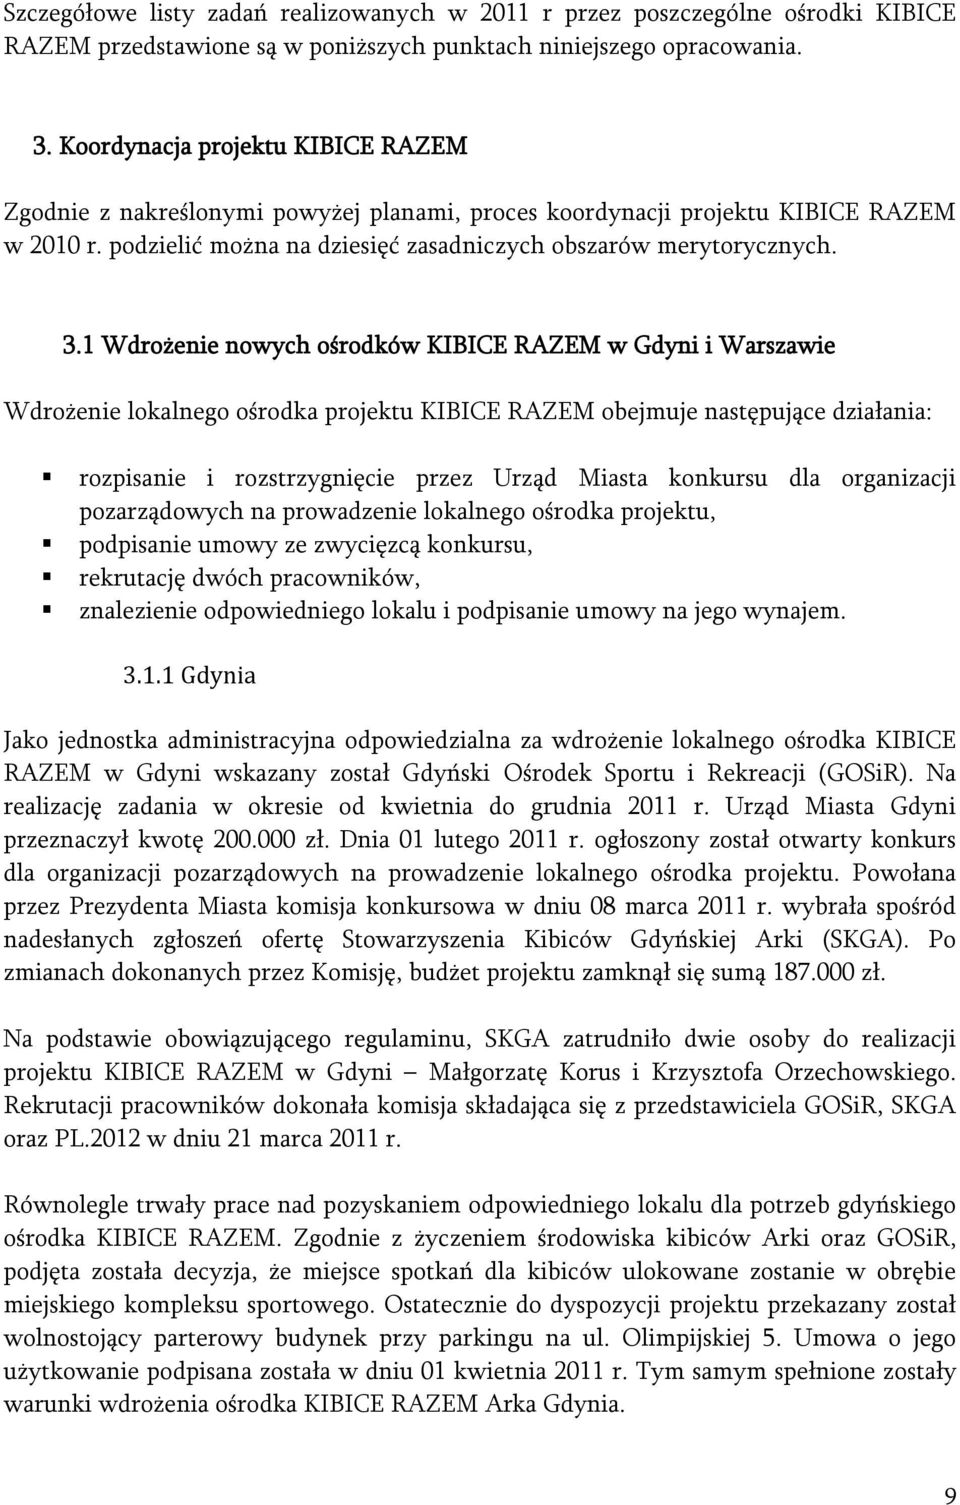 1 Wdrożenie nowych ośrodków KIBICE RAZEM w Gdyni i Warszawie Wdrożenie lokalnego ośrodka projektu KIBICE RAZEM obejmuje następujące działania: rozpisanie i rozstrzygnięcie przez Urząd Miasta konkursu